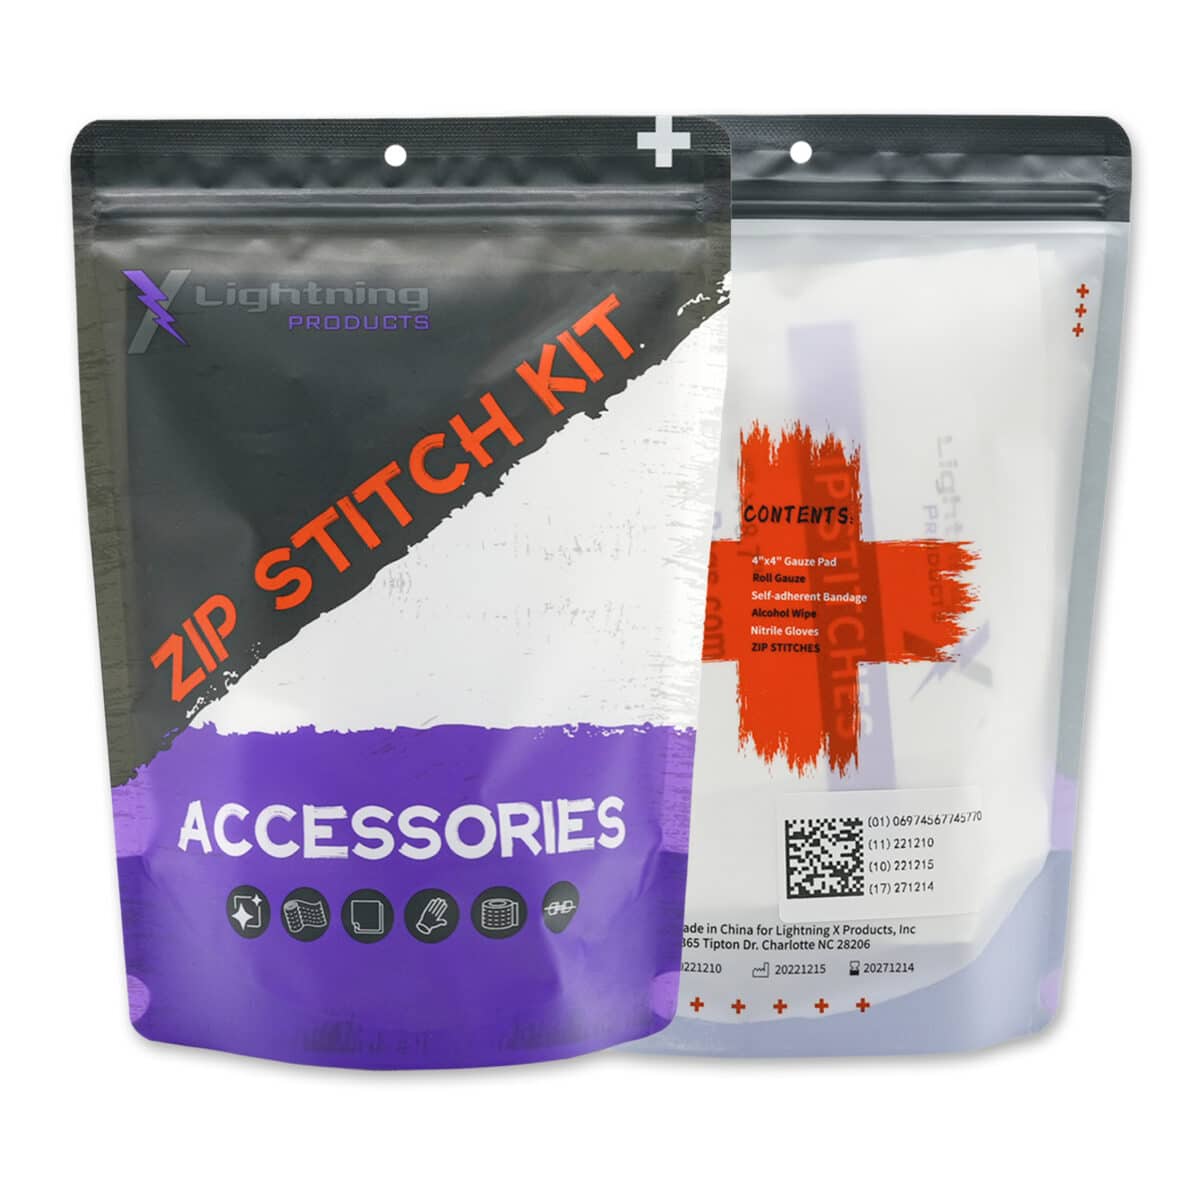 5 Stitch Zipper Pulls – Fireweed Stitches LLC